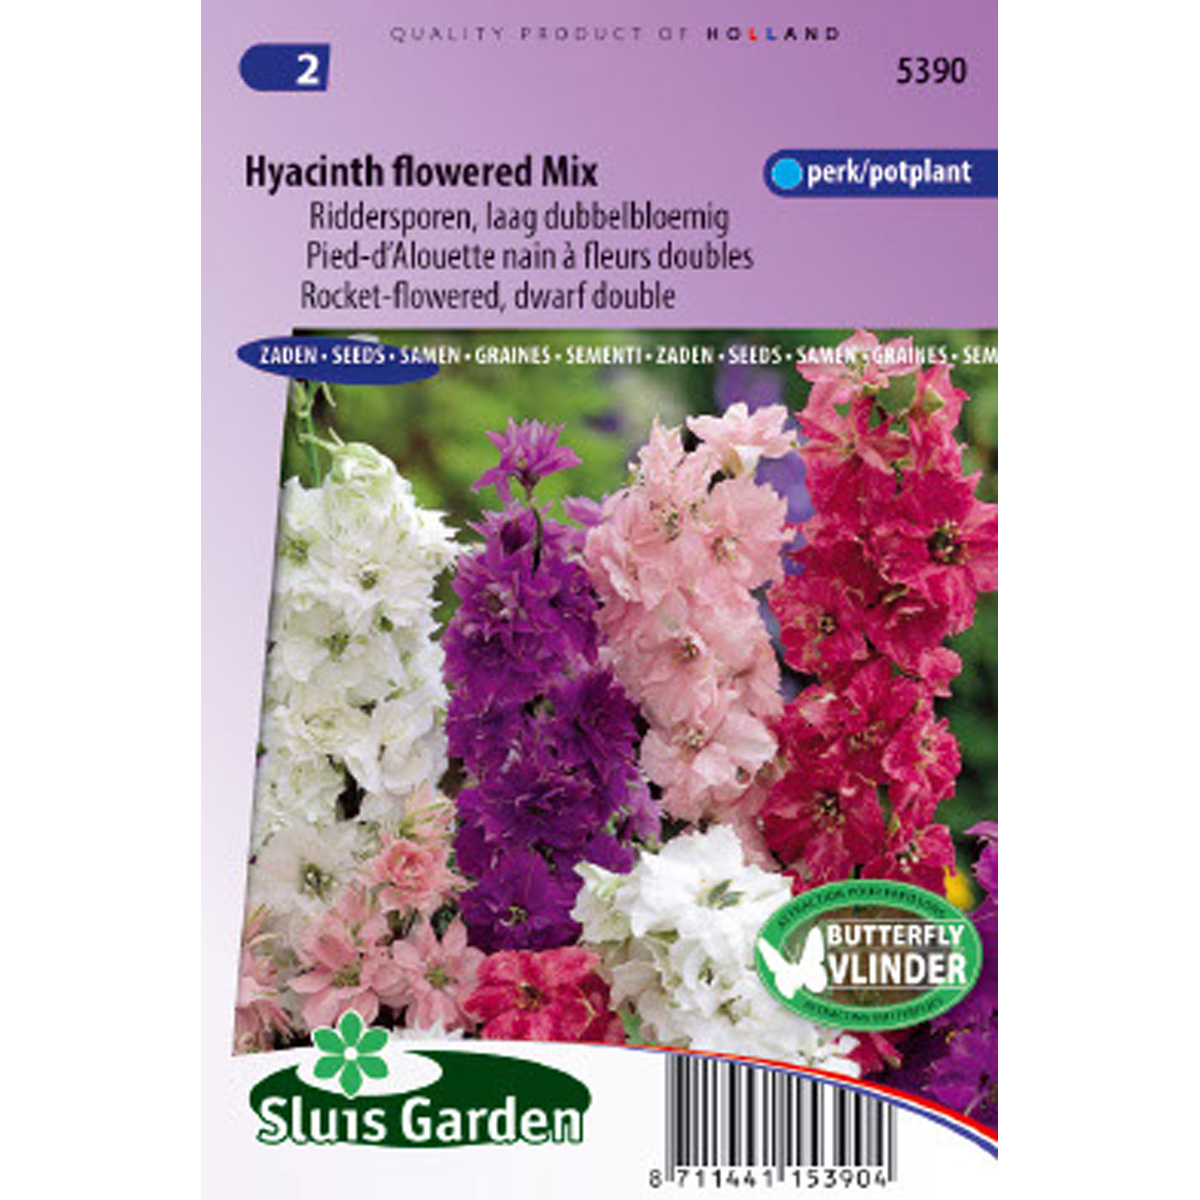 Delphinium Hyacinth Flowered Mix - Pied d'Alouette annuel nain en mélange